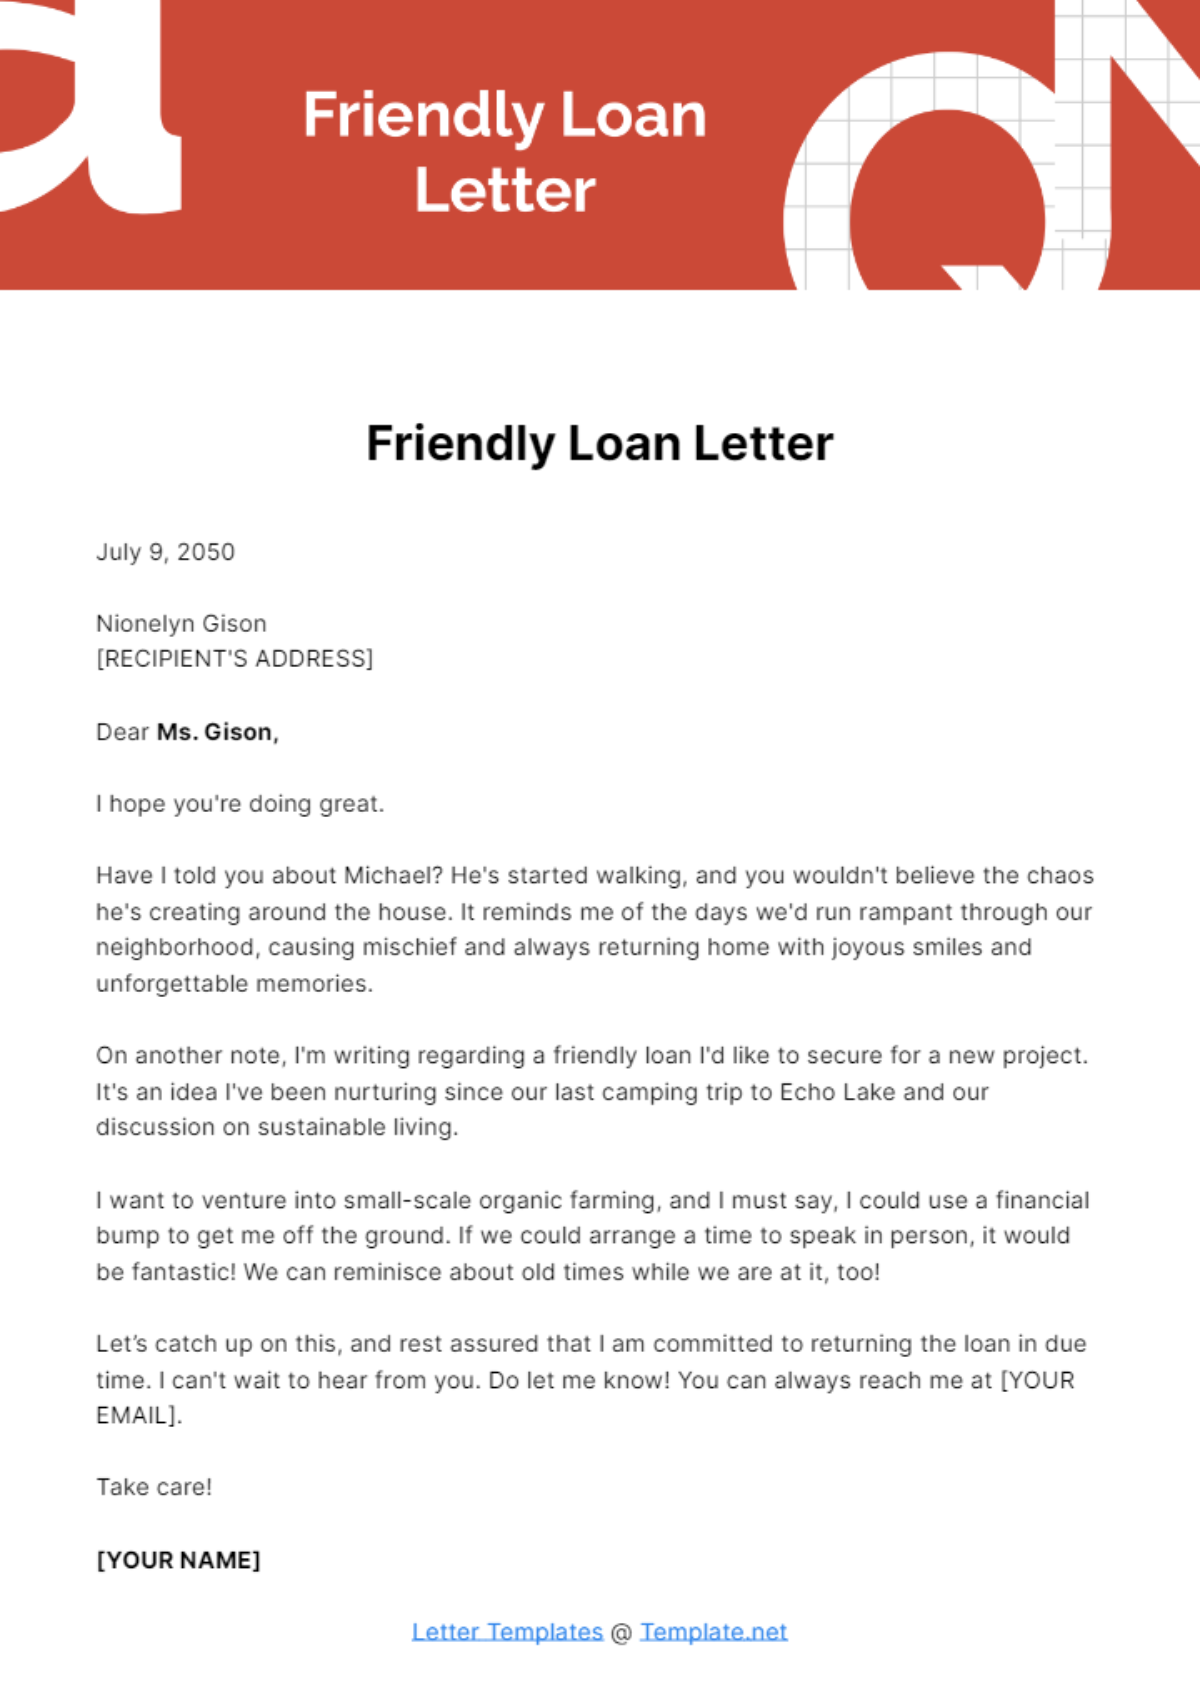 Friendly Loan Letter Template